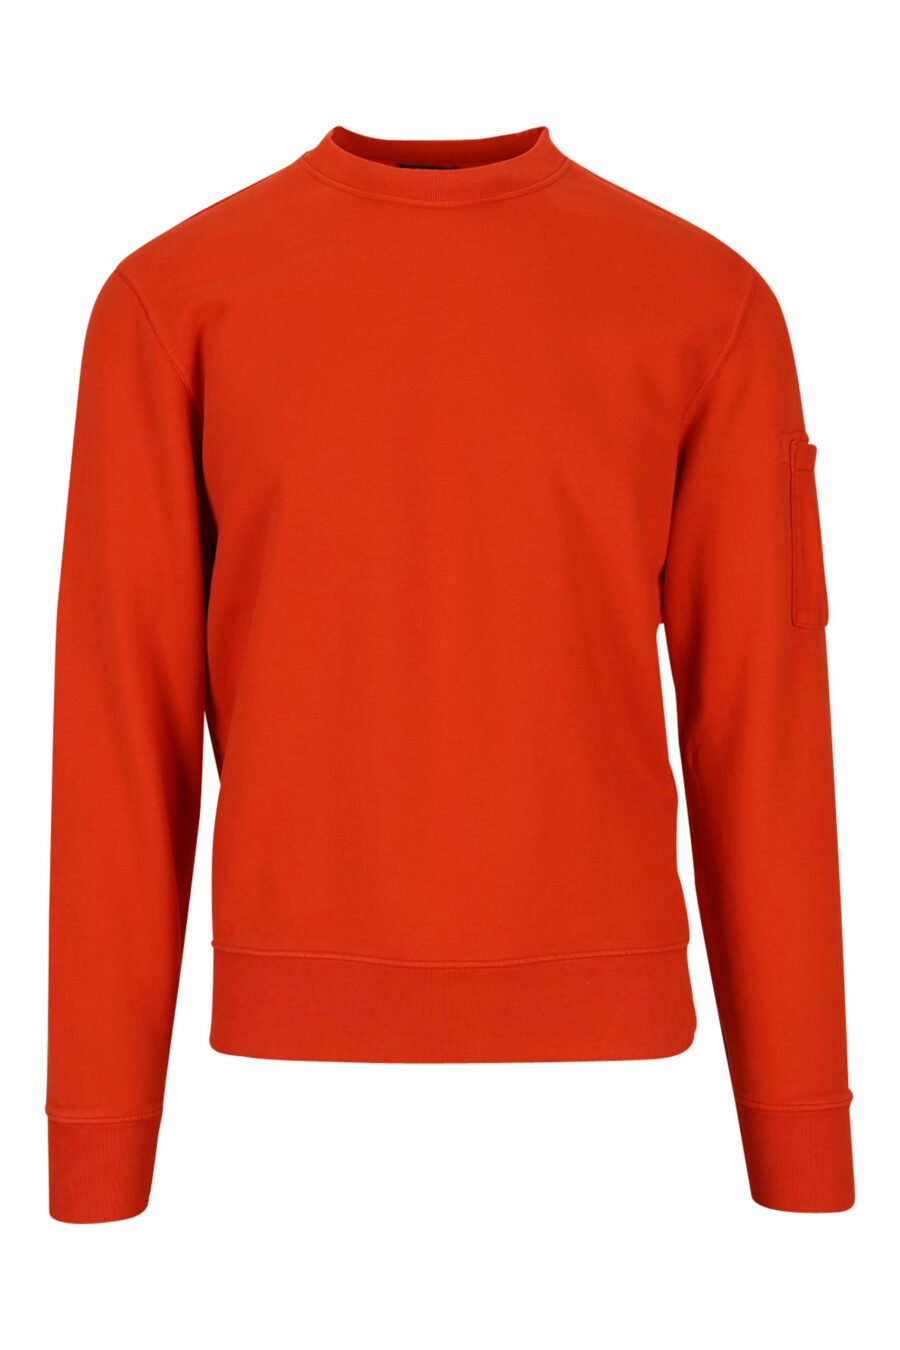 Sweatshirt orange avec logo latéral de la lentille - 7620943598254 scaled